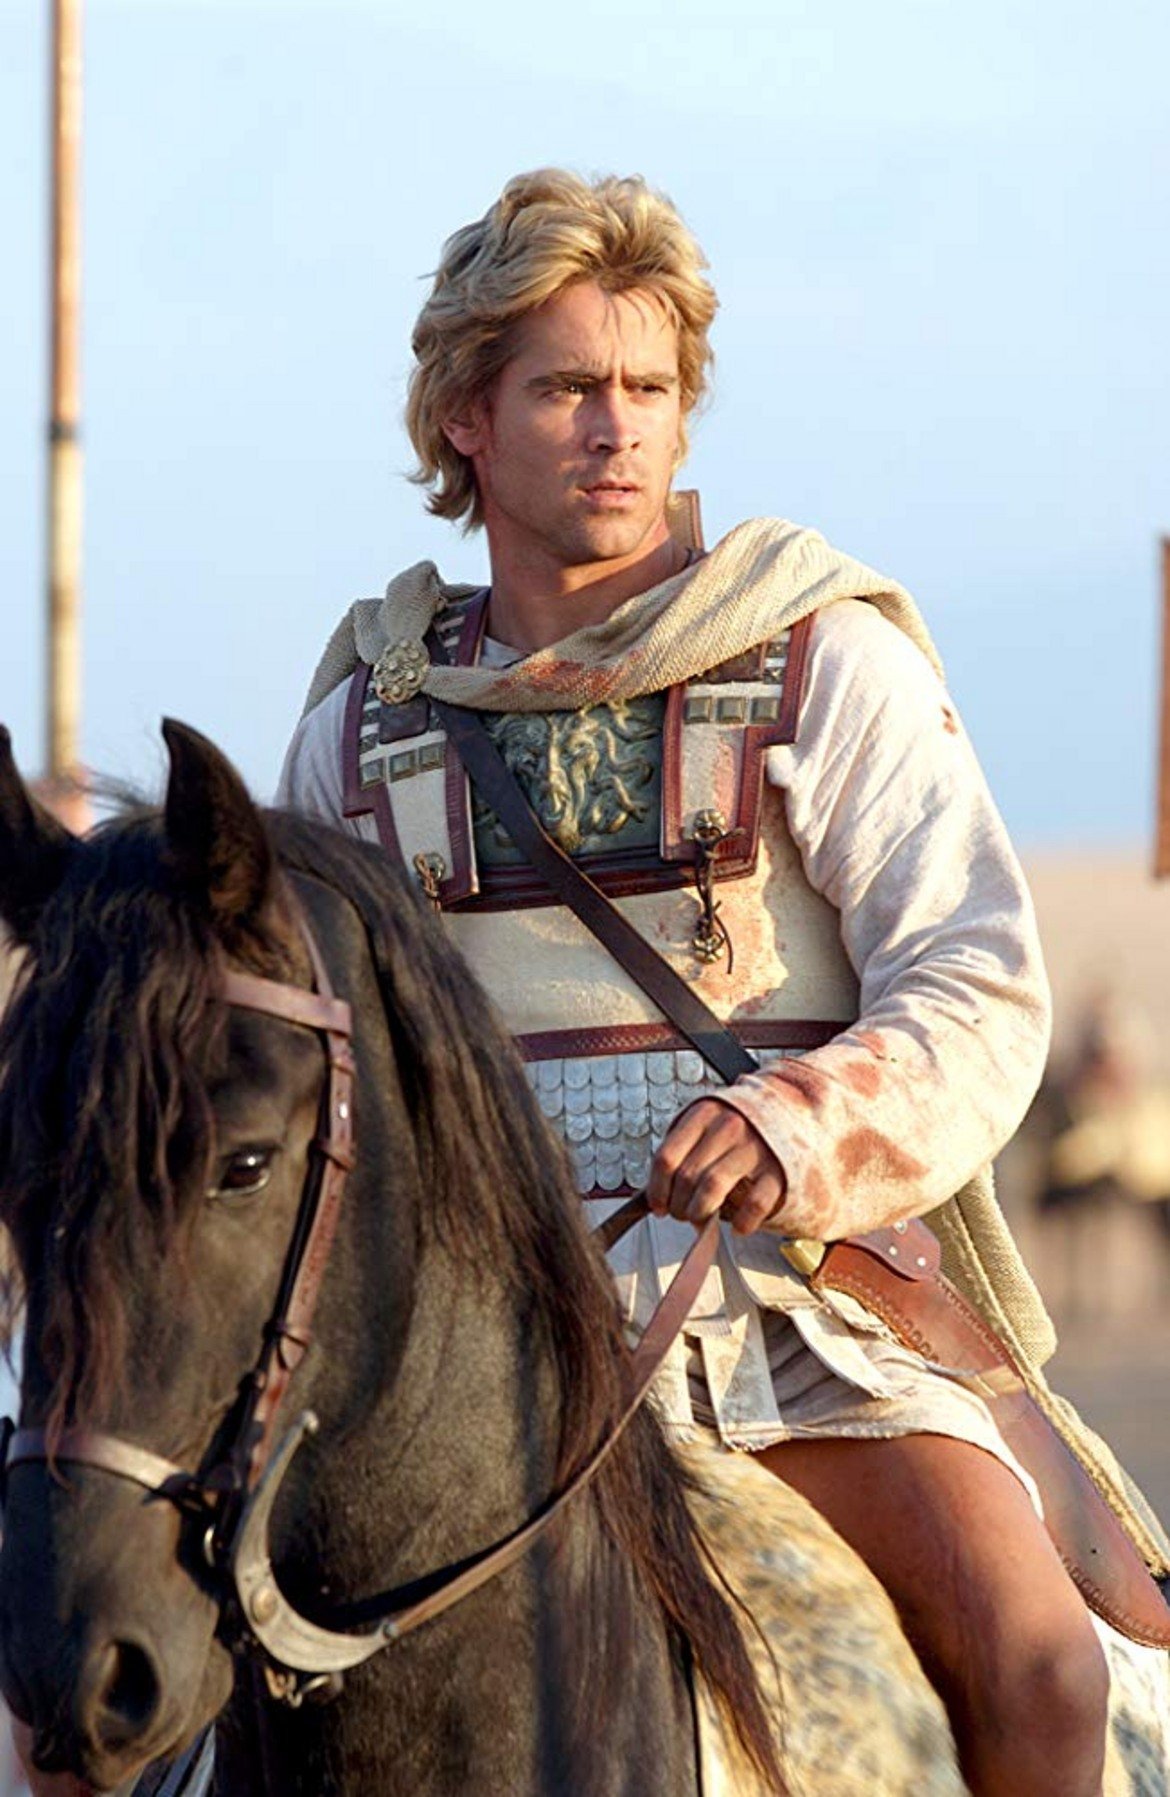  "Александър" 

През 2004 г. излизат два епоса за древния свят - "Троя" и "Александър". Малко известен факт е, че Брад Пит първоначално е бил спряган за роля в "Александър" - първо на самия Александър Велики, а след това на военачалника Хефестион. Актьорът отказва и двете оферти, за да блесне в главната роля на Ахил в "Троя".